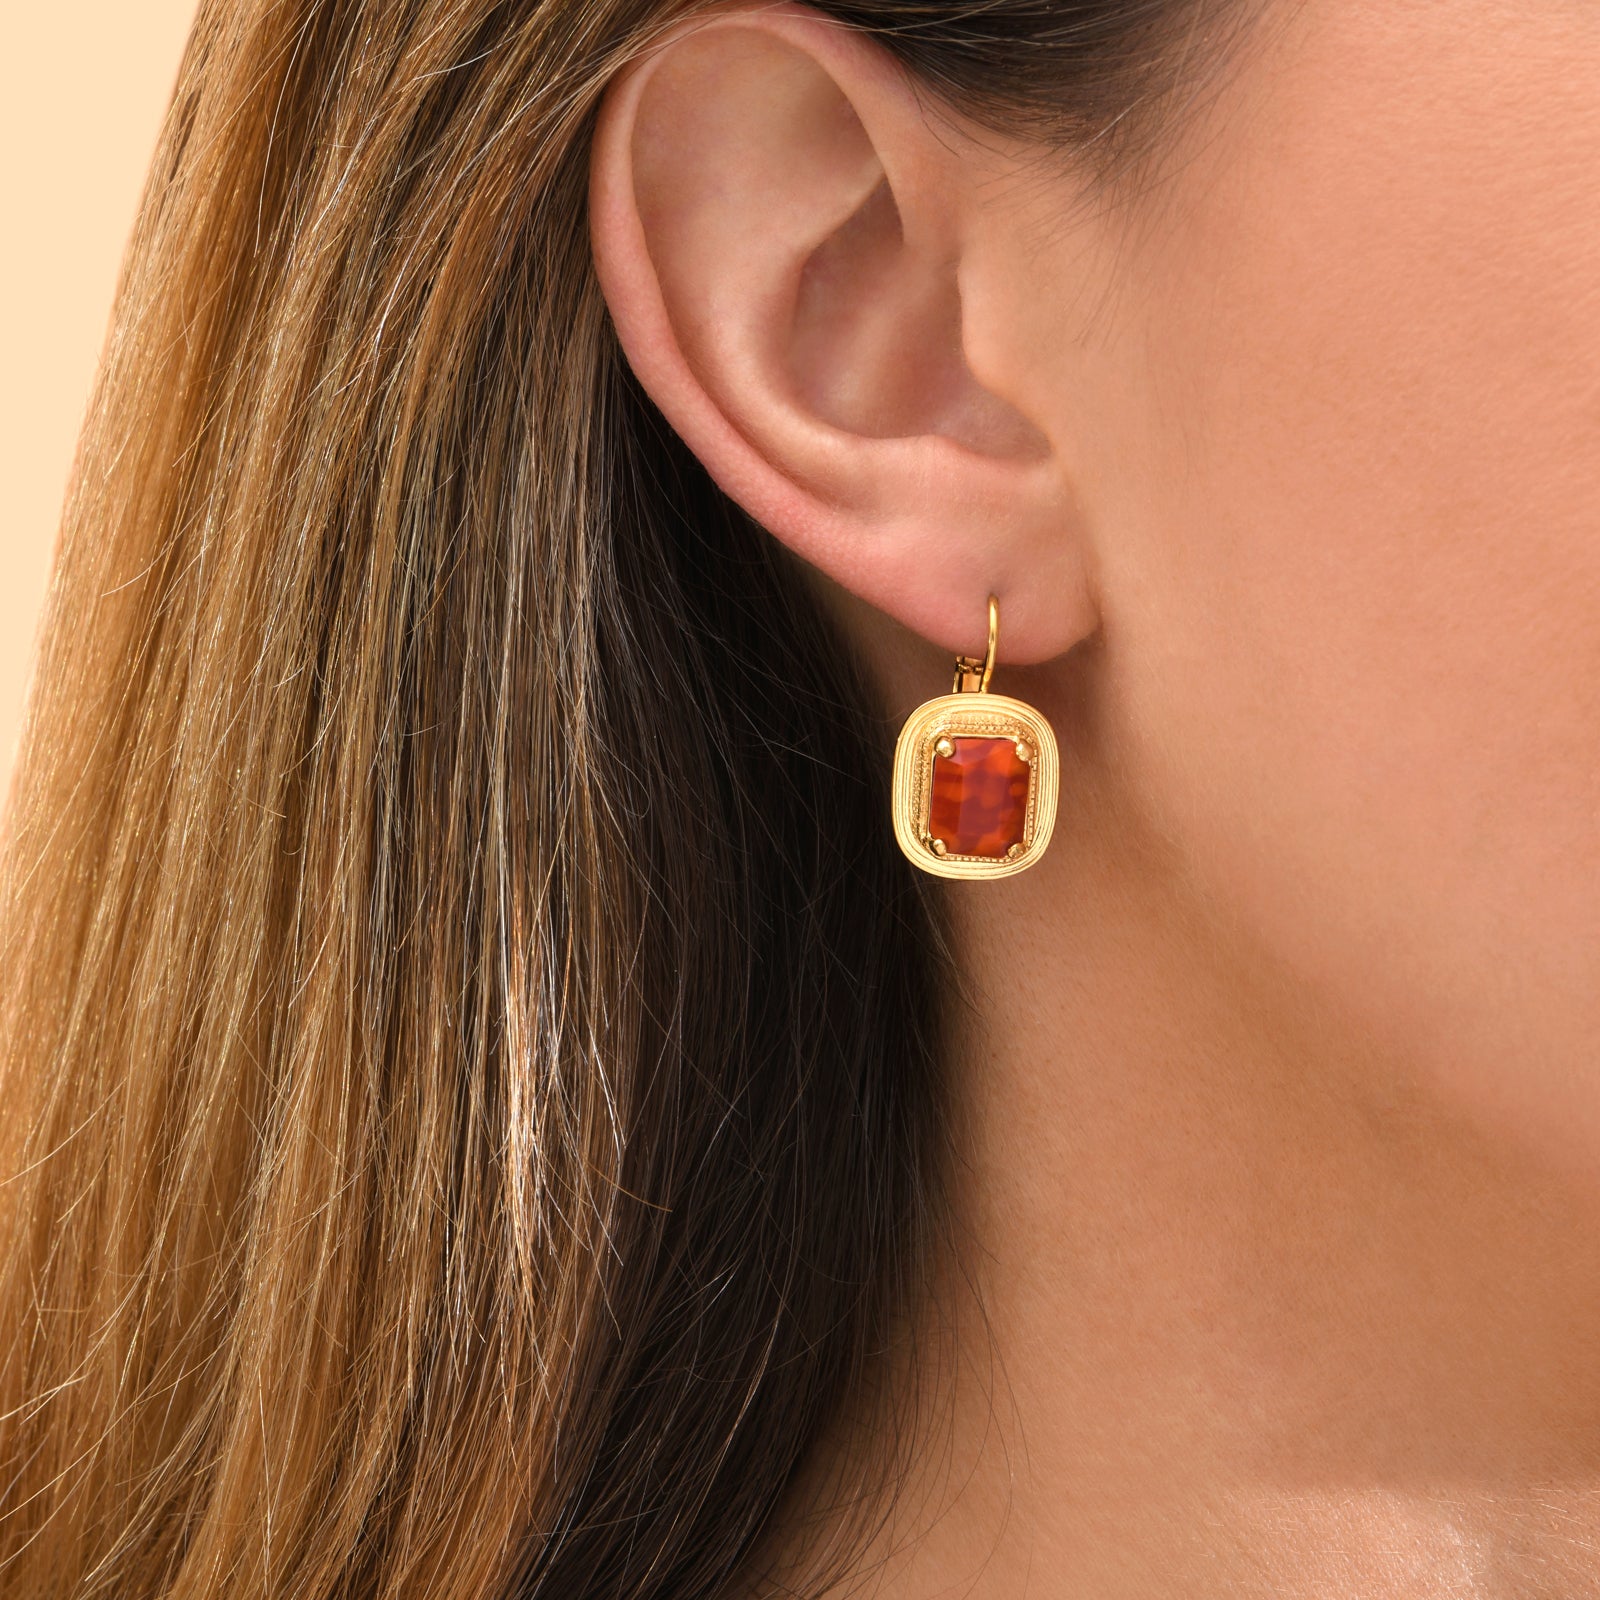 Art Deco style earrings in red